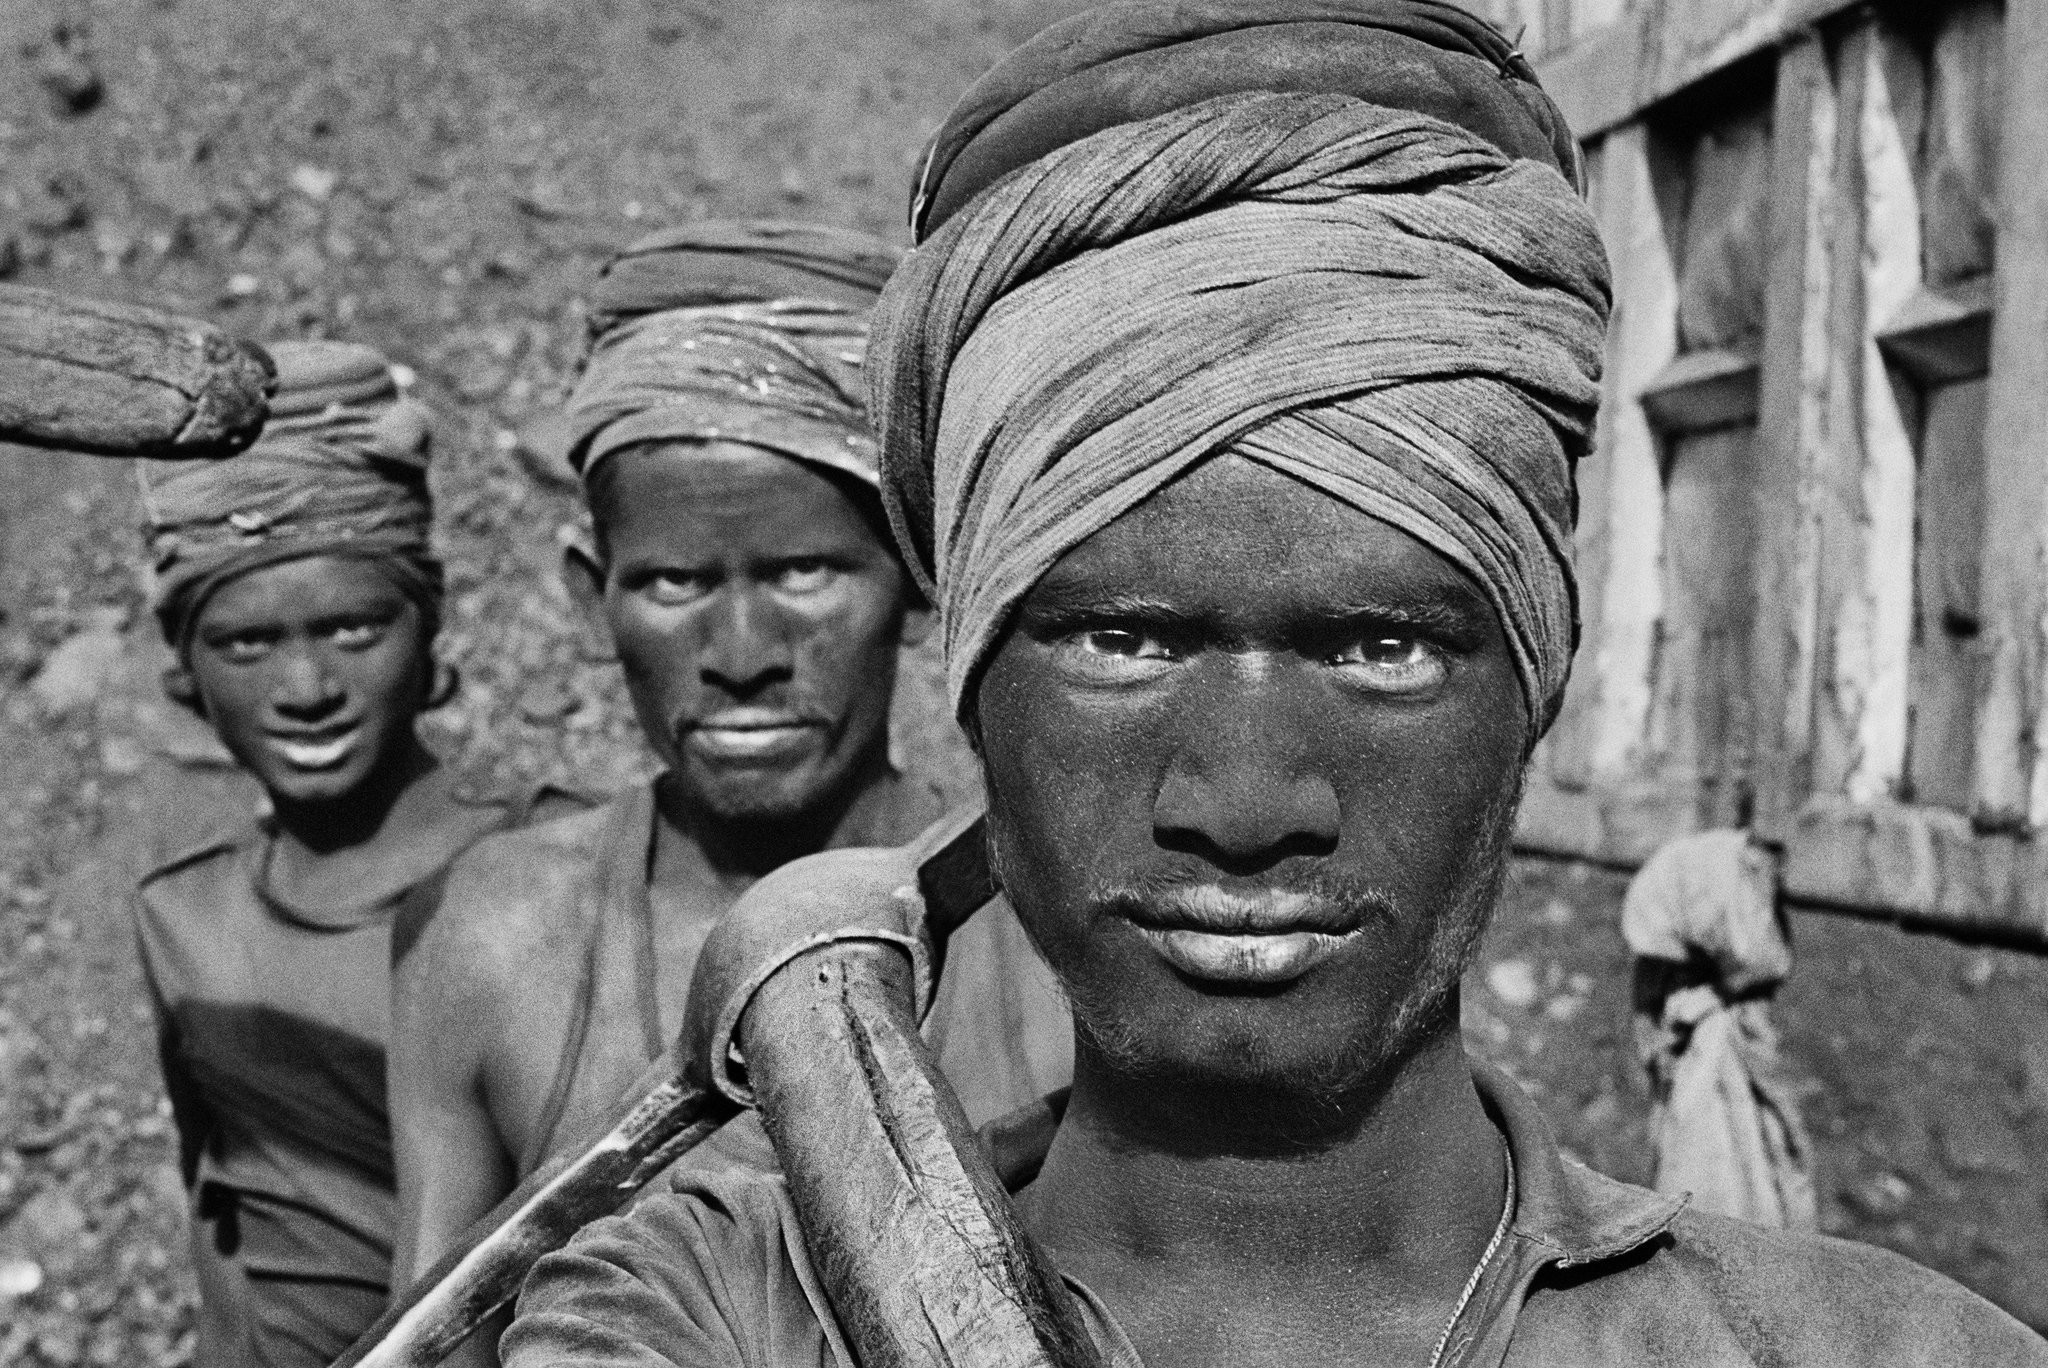 Шахтёры, Дханбад, штат Бихар, Индия, 1989. Автор Себастьян Сальгадо